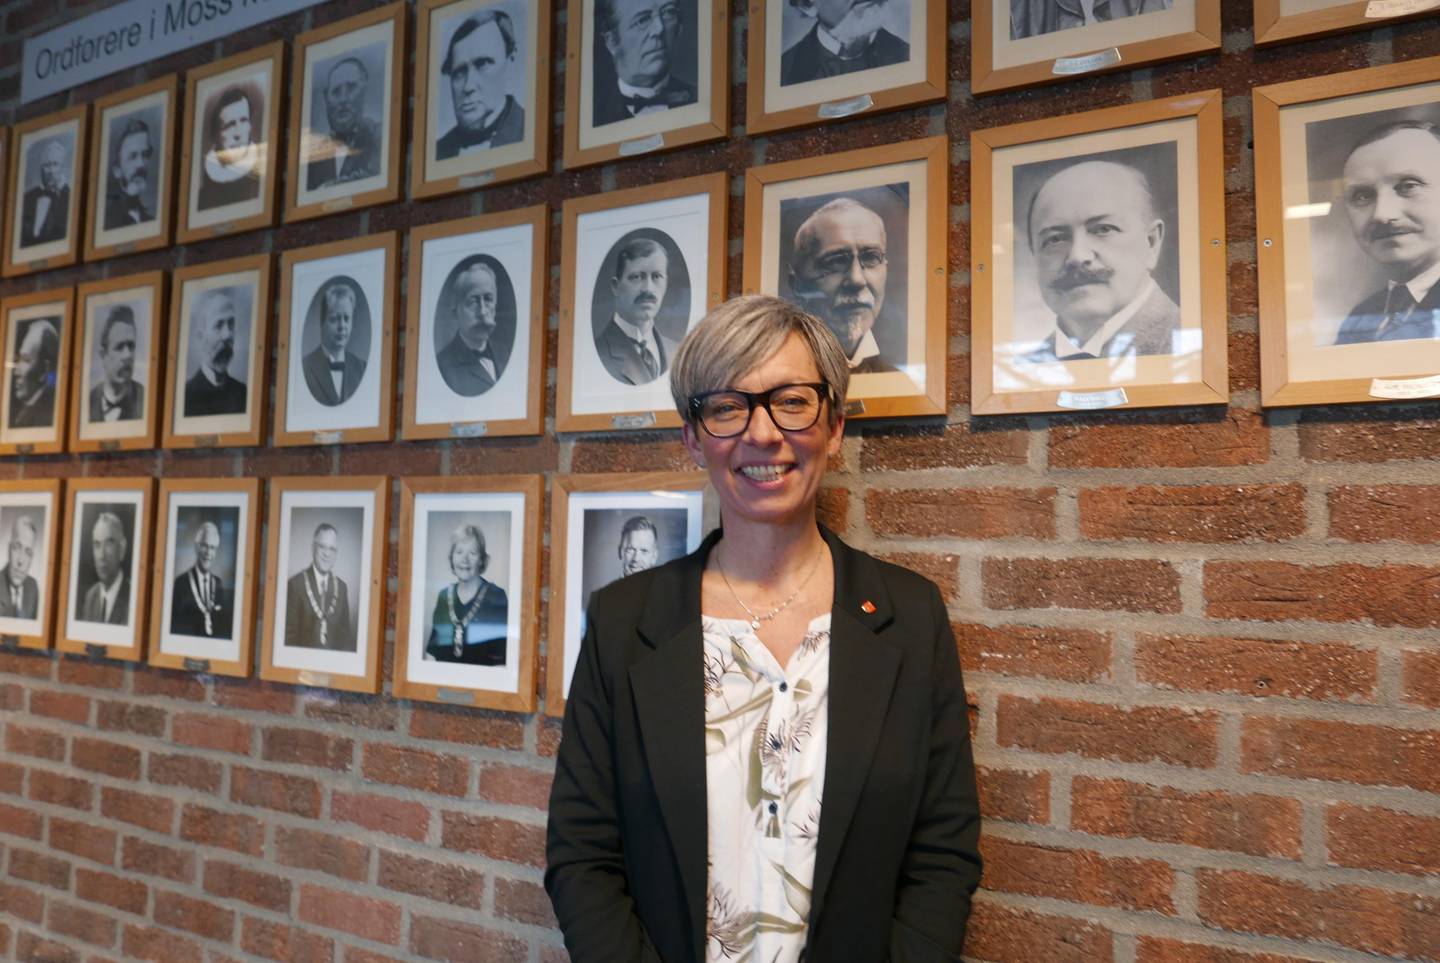 Ordfører Hanne Tollerud, Moss. 01-02-2018.